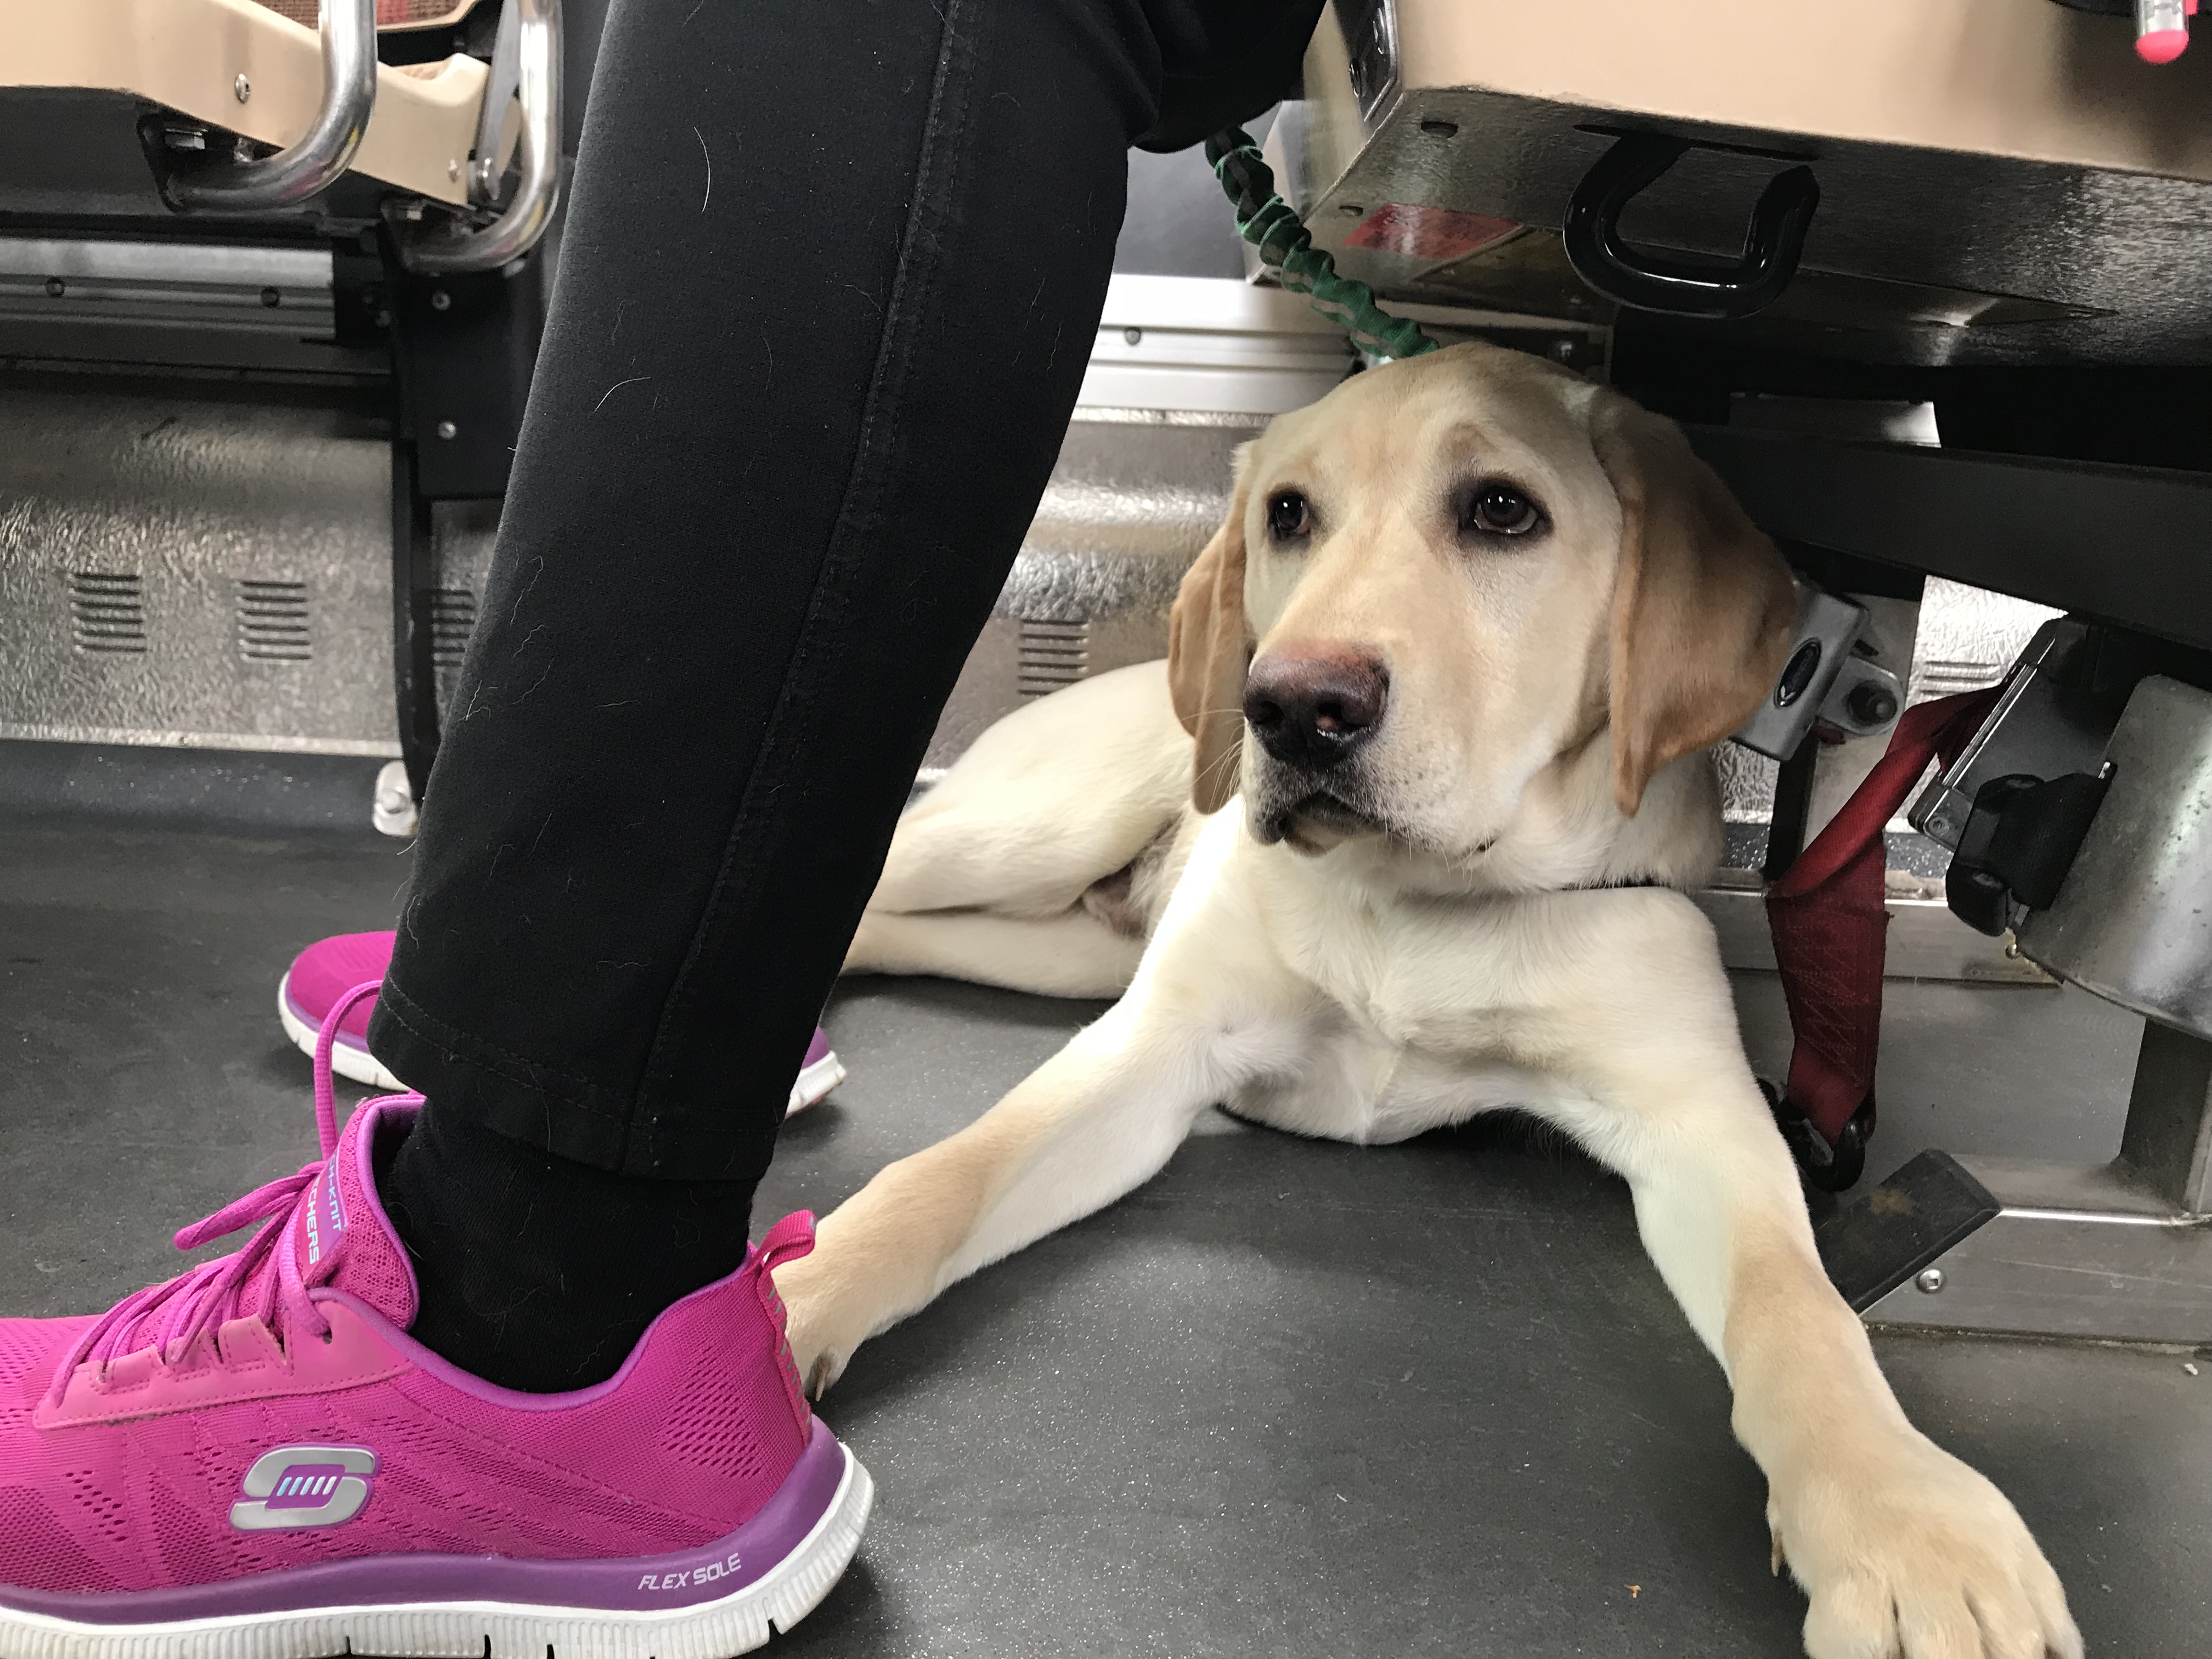 Un Labrador-Retriever blond allongé sous le siège de l'autobus de son éleveuse bénévole